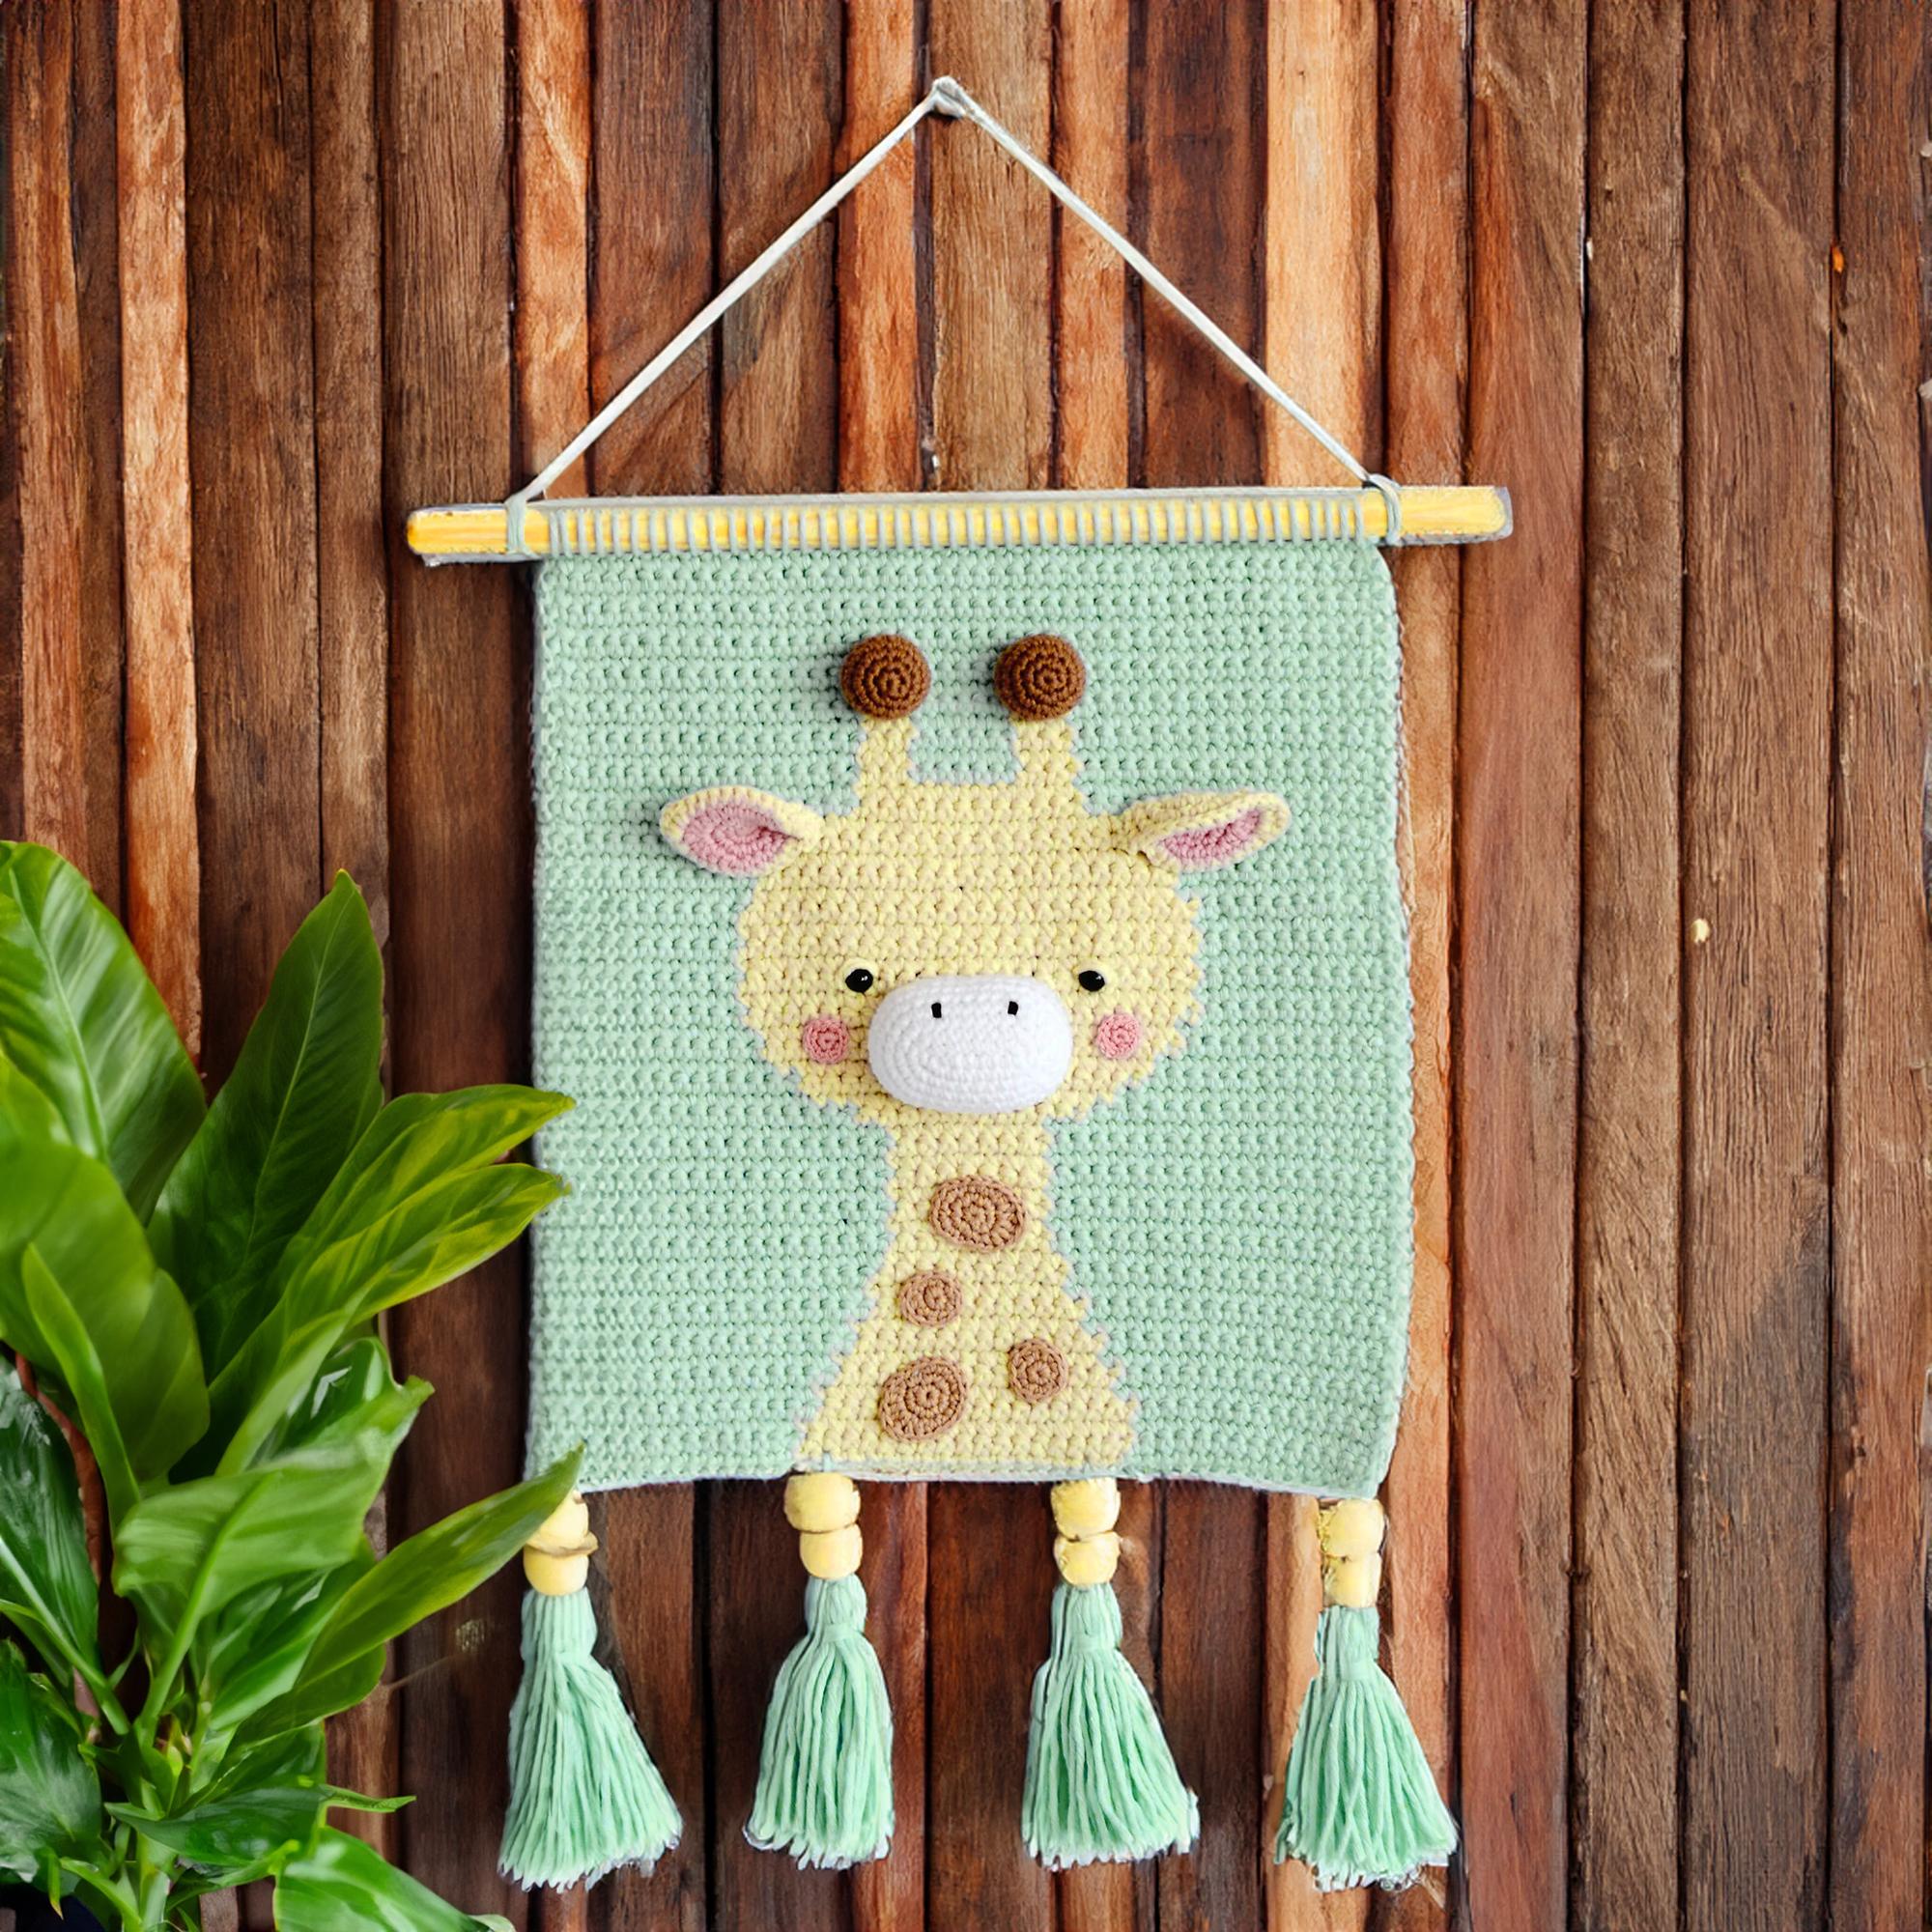 Charming Crochet Giraffe Wall Art